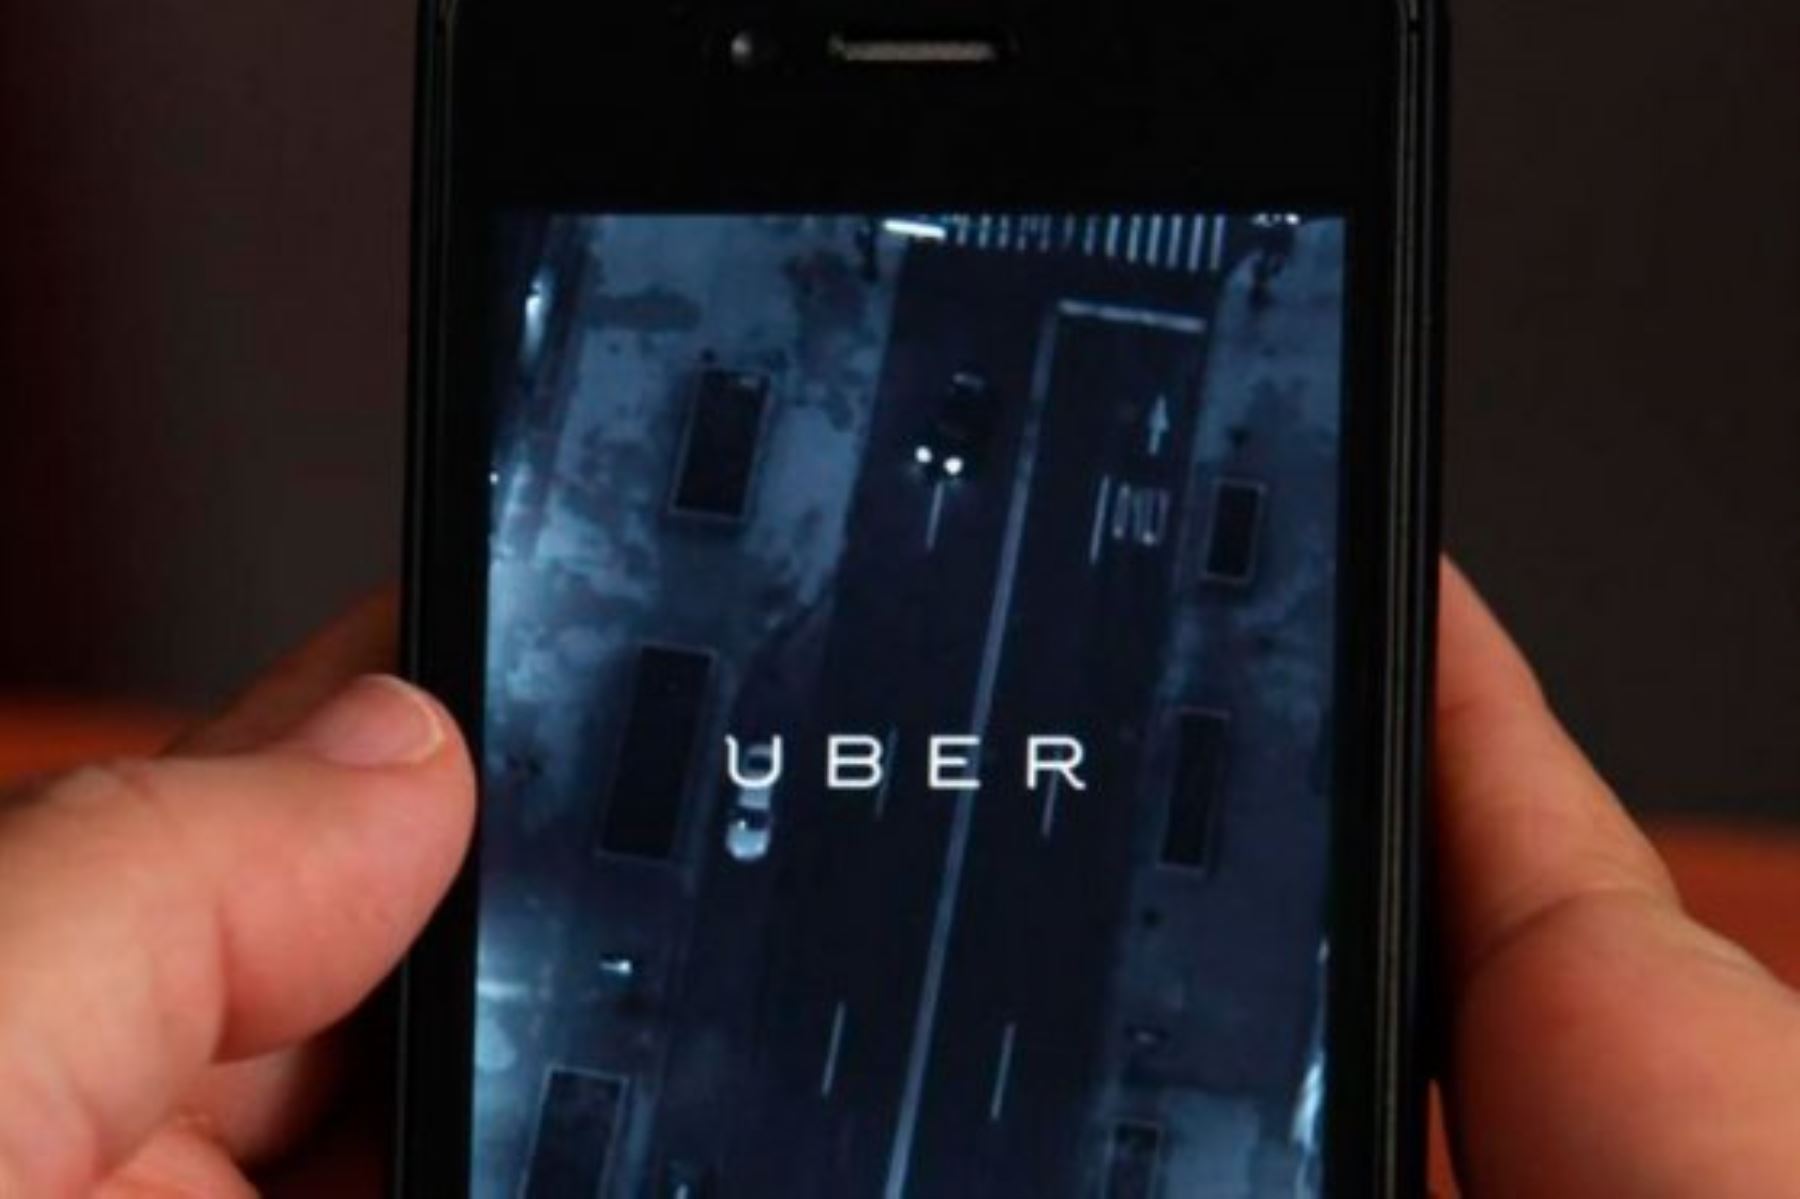 El problema surge por la presencia de Uber en la vía pública solo para atraer clientes. Foto: Efe.